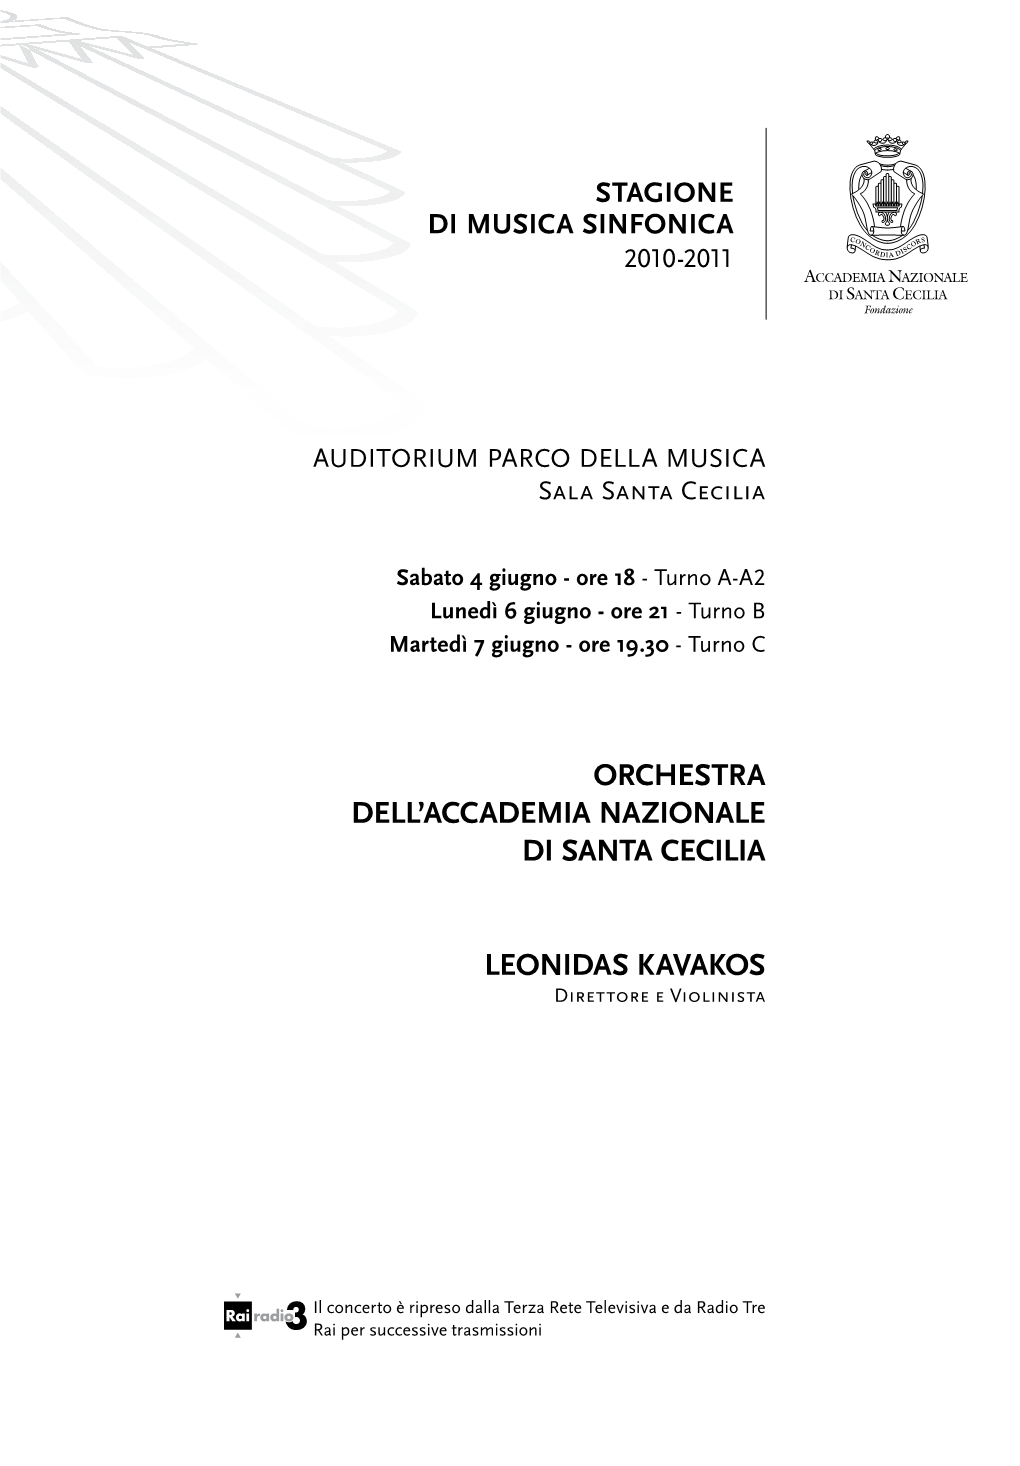 Orchestra Dell'accademia Nazionale Di Santa Cecilia